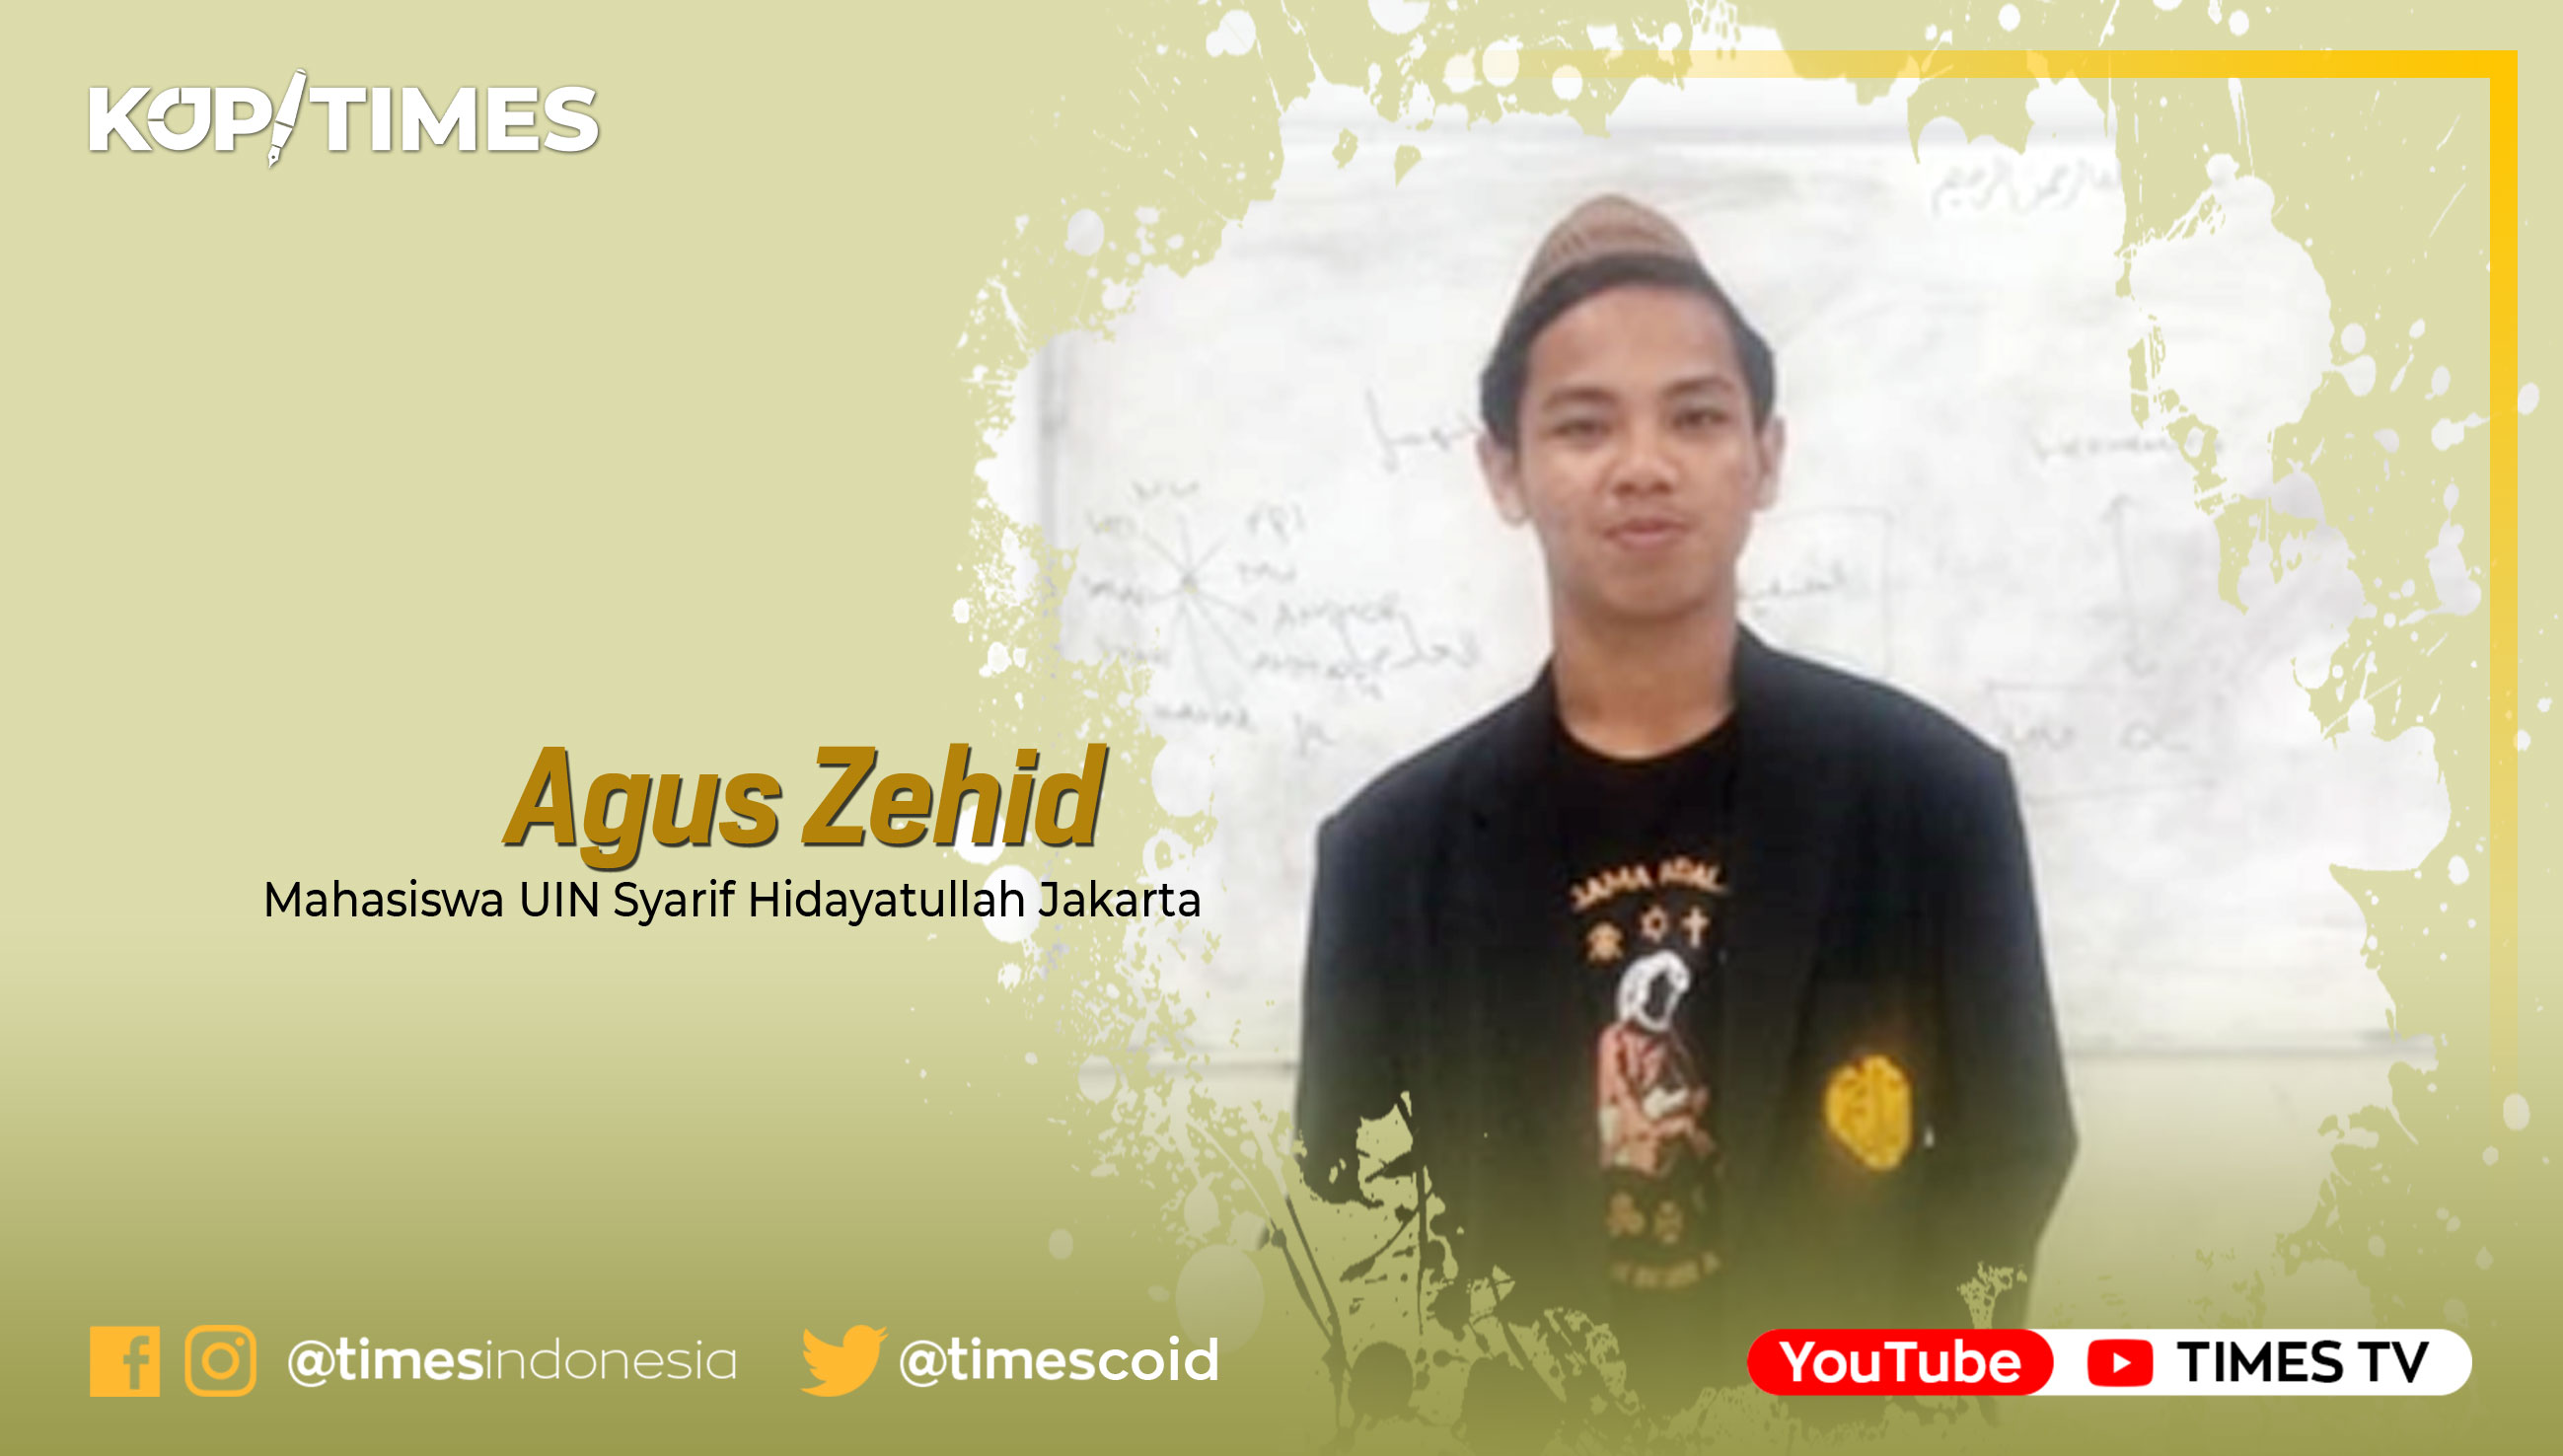 Agus Zehid, Mahasiswa Tarjamah Semester 5 Fakultas Adab dan Humaniora UIN Syarif Hidayatullah Jakarta.